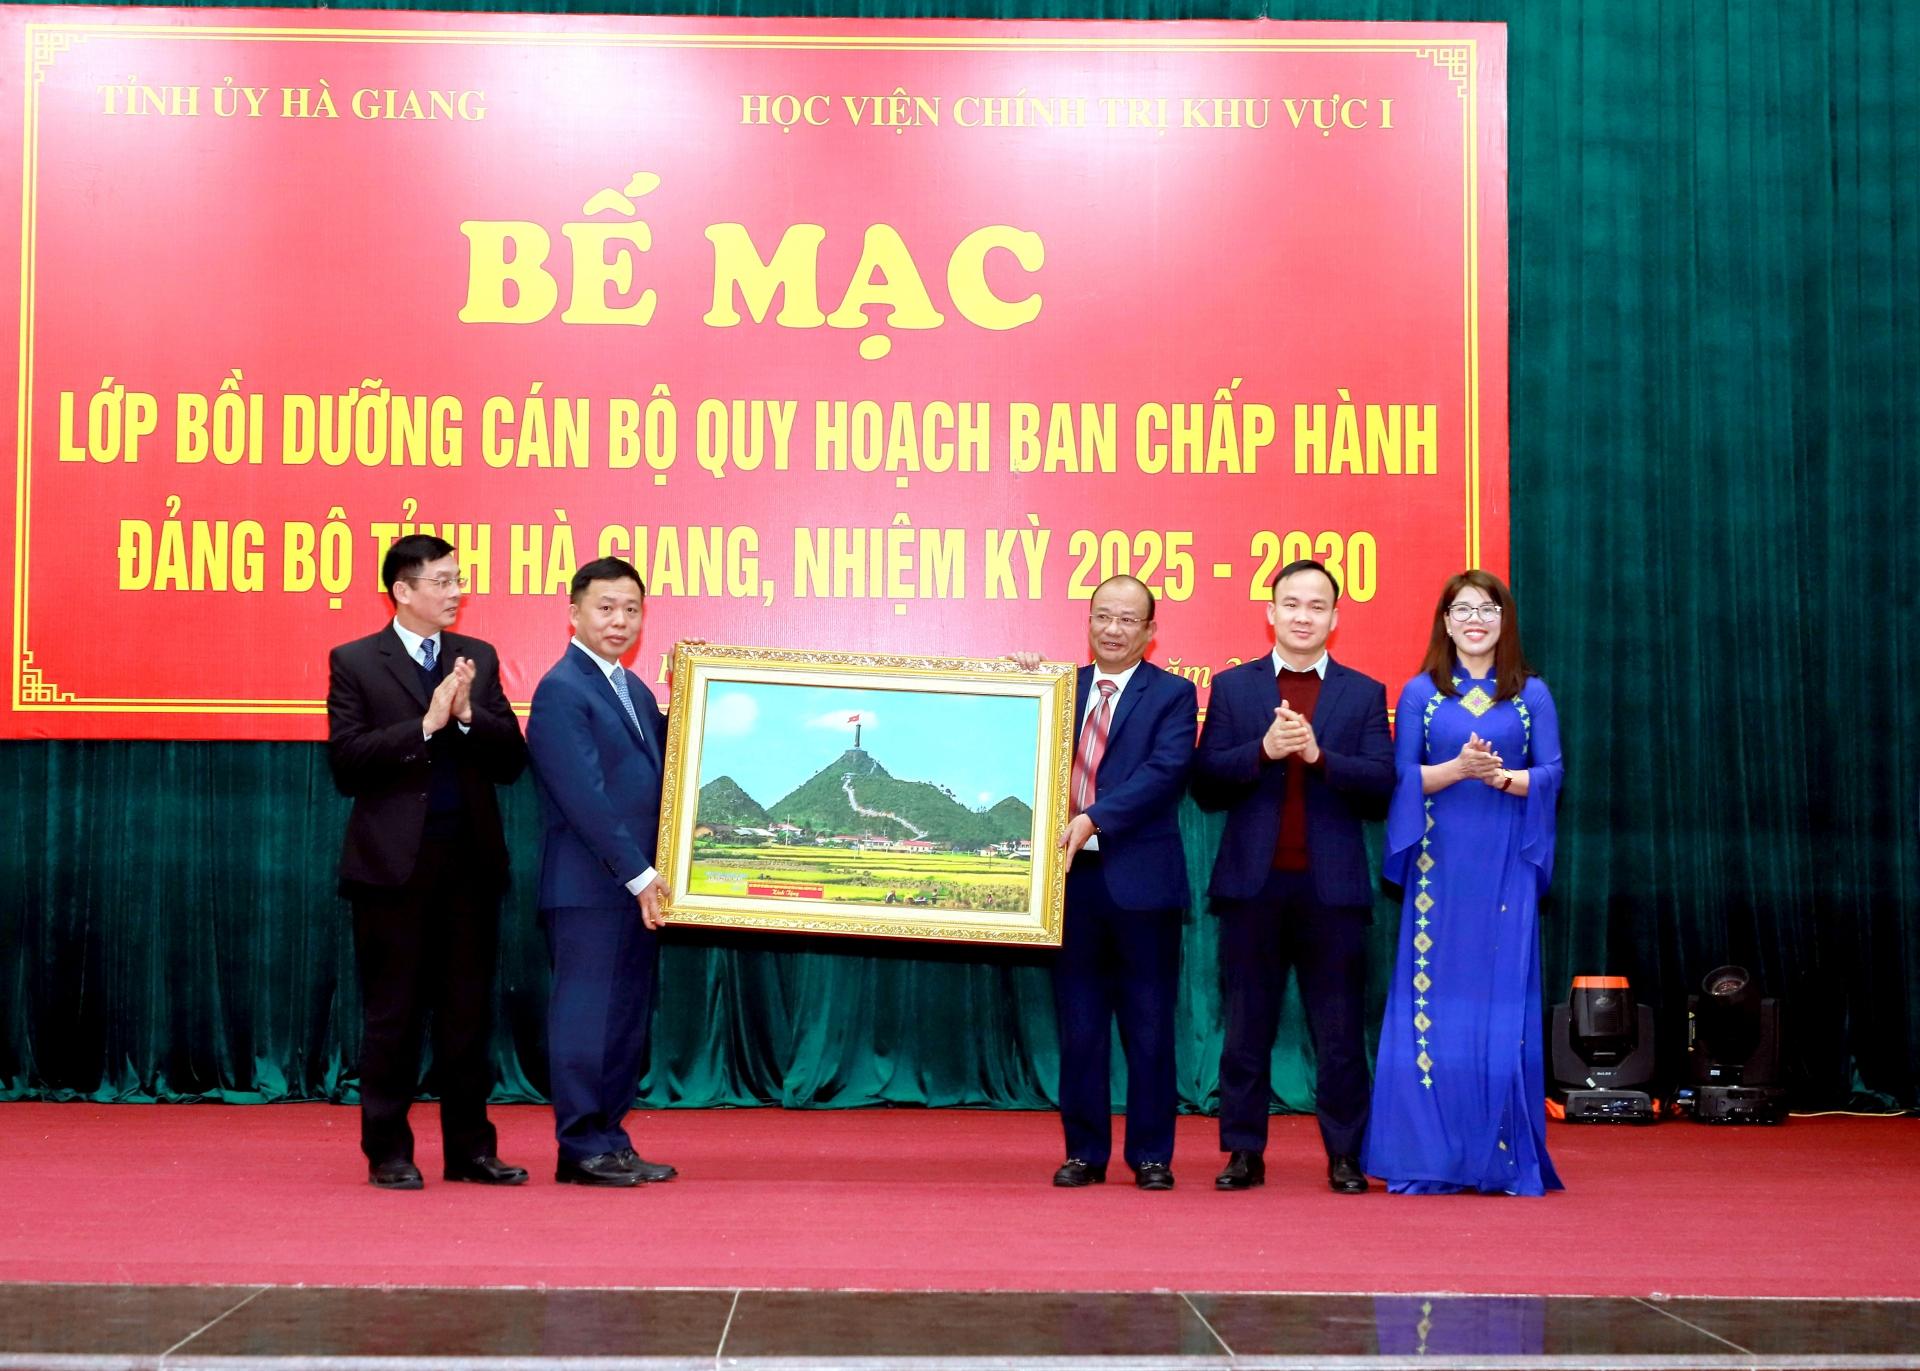 Tập thể lớp bồi dưỡng cán bộ quy hoạch BCH Đảng bộ tỉnh Hà Giang nhiệm kỳ 2025 - 2030 tặng bức ảnh Cột cờ Quốc gia Lũng Cú cho Giám đốc Học viện Chính trị khu vực 1.